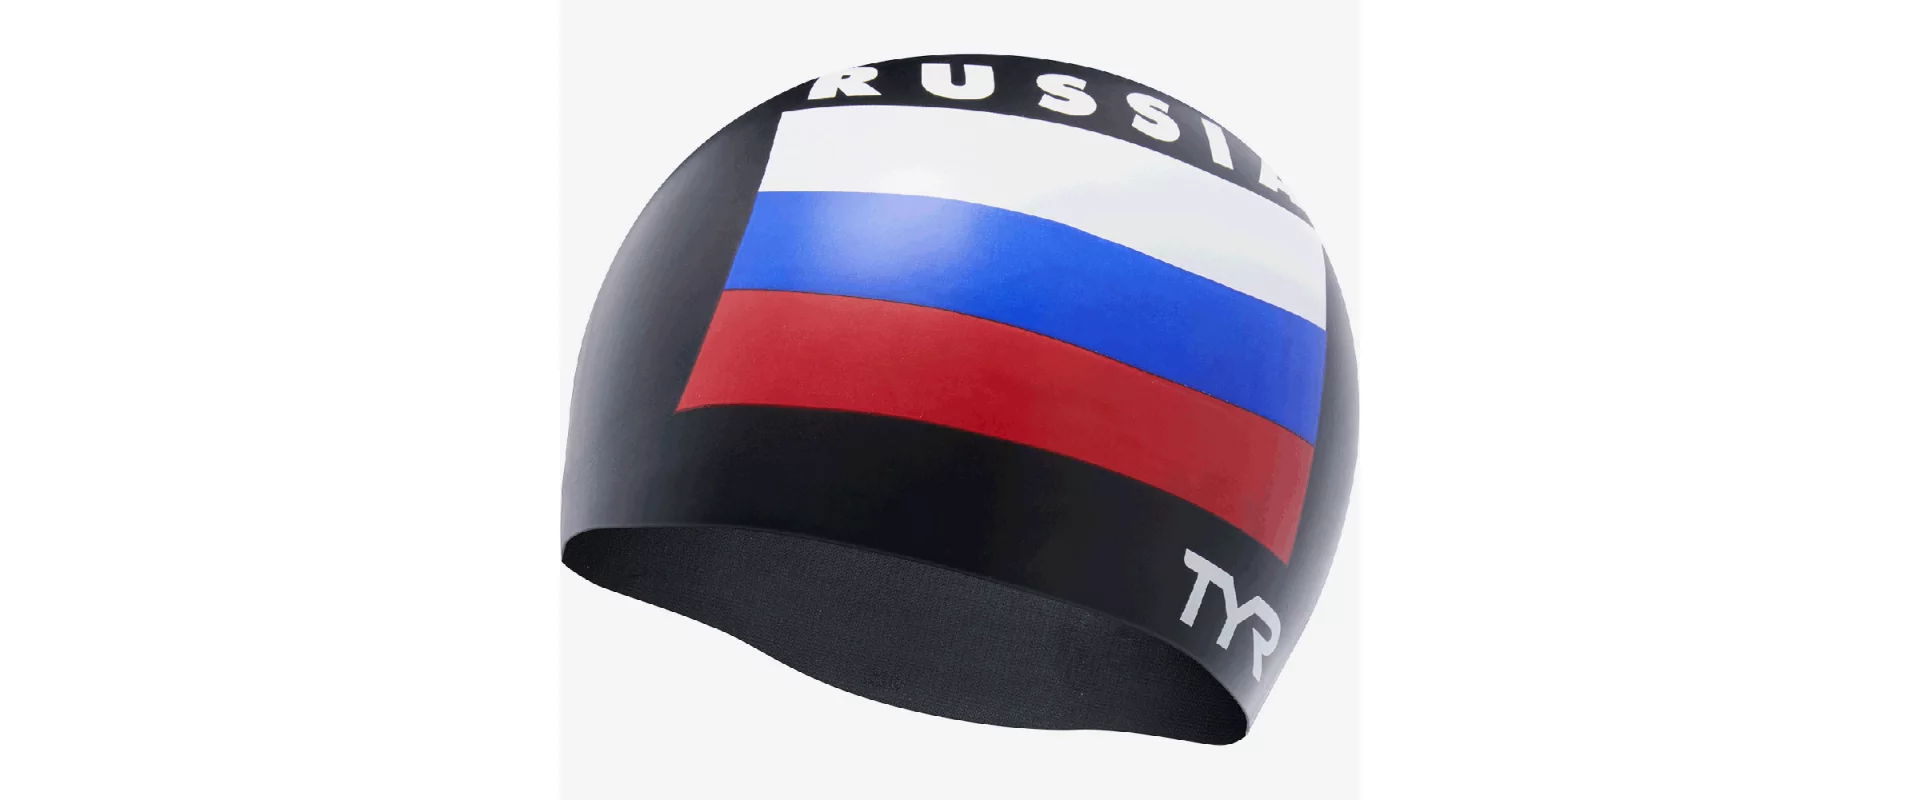 TYR Russia Silicone Swim Cap / Шапочка для плавания